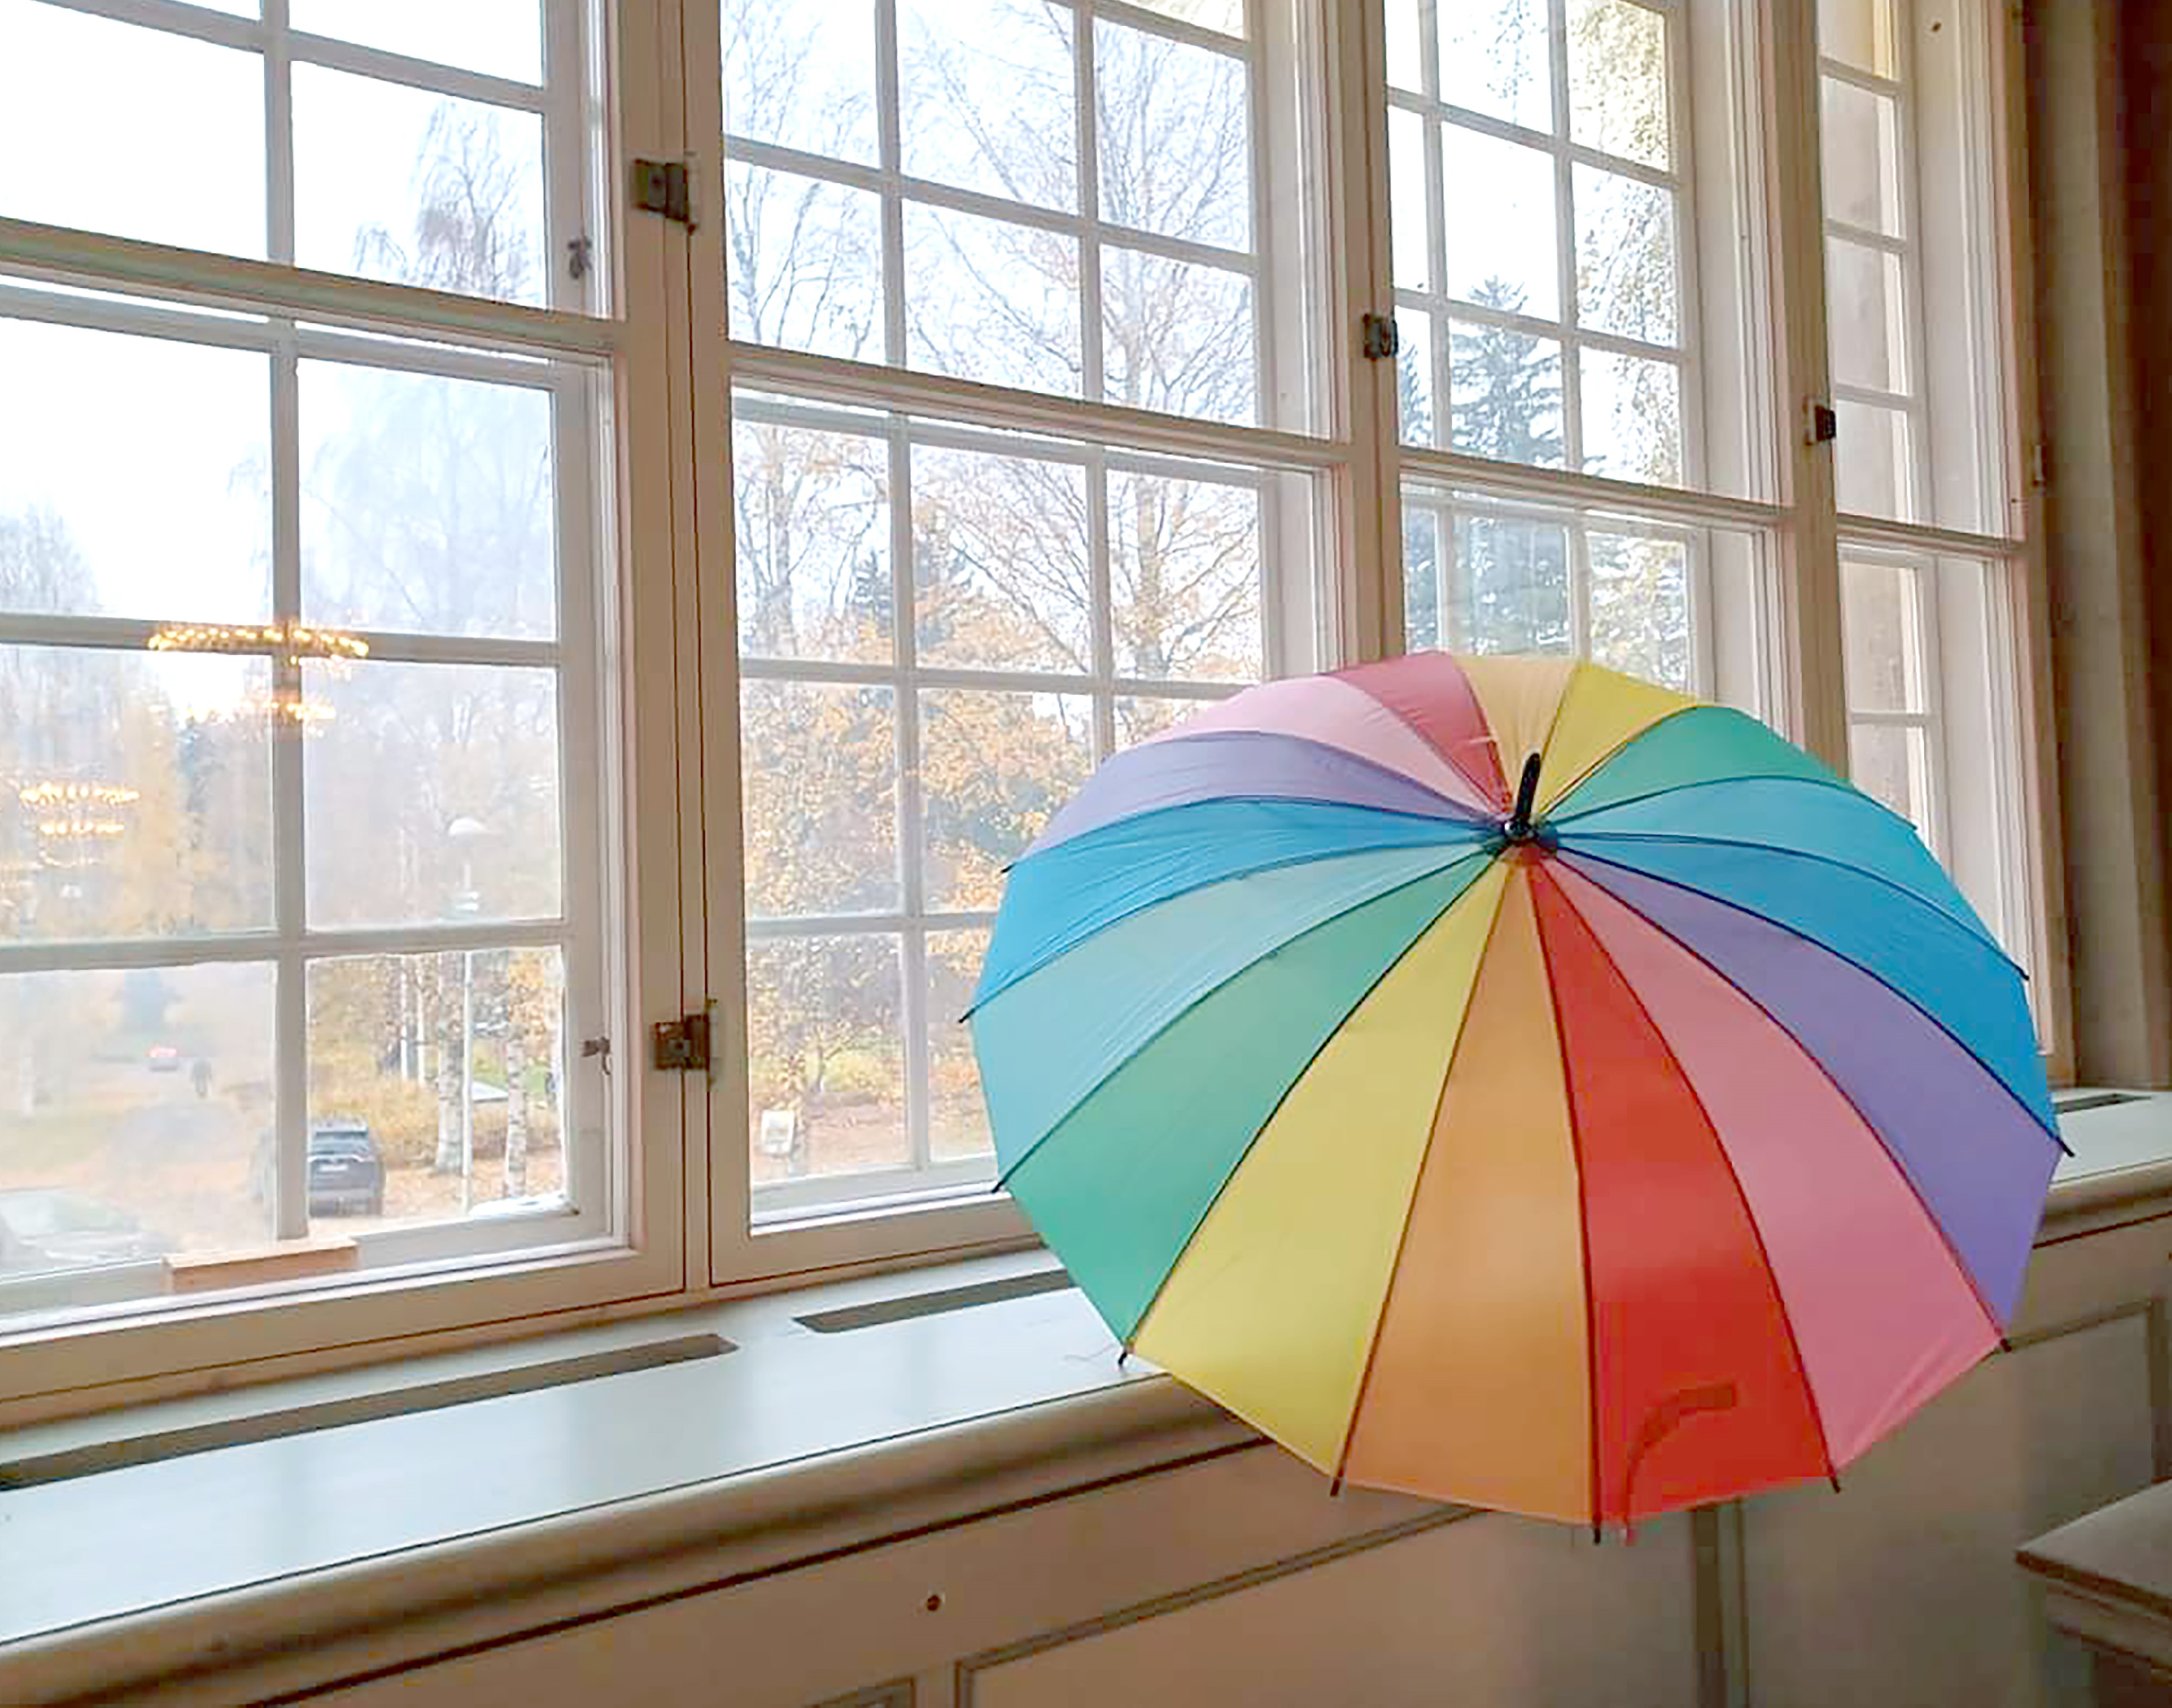 Värikäs sateenvarjo nojaa Pitäjänkirkon ikkunaan